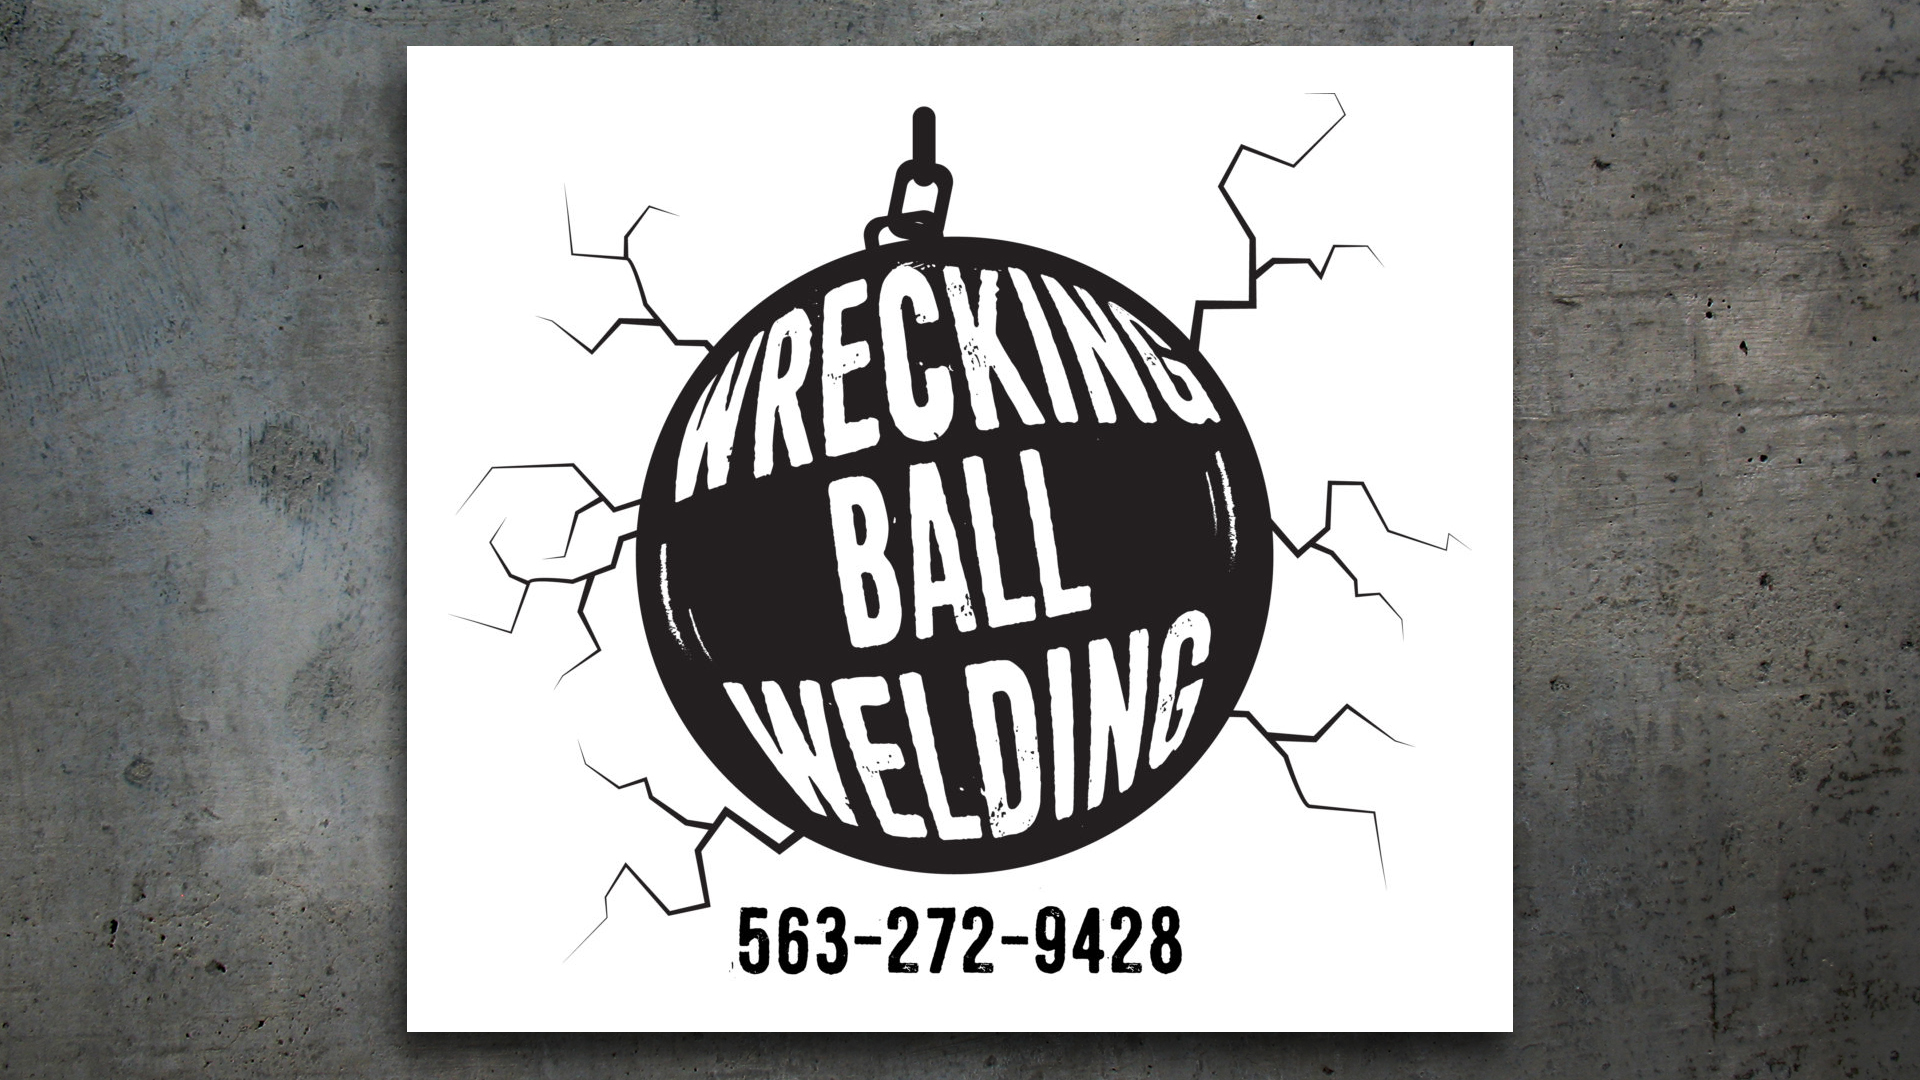 New Logo – Wrecking Ball Welding